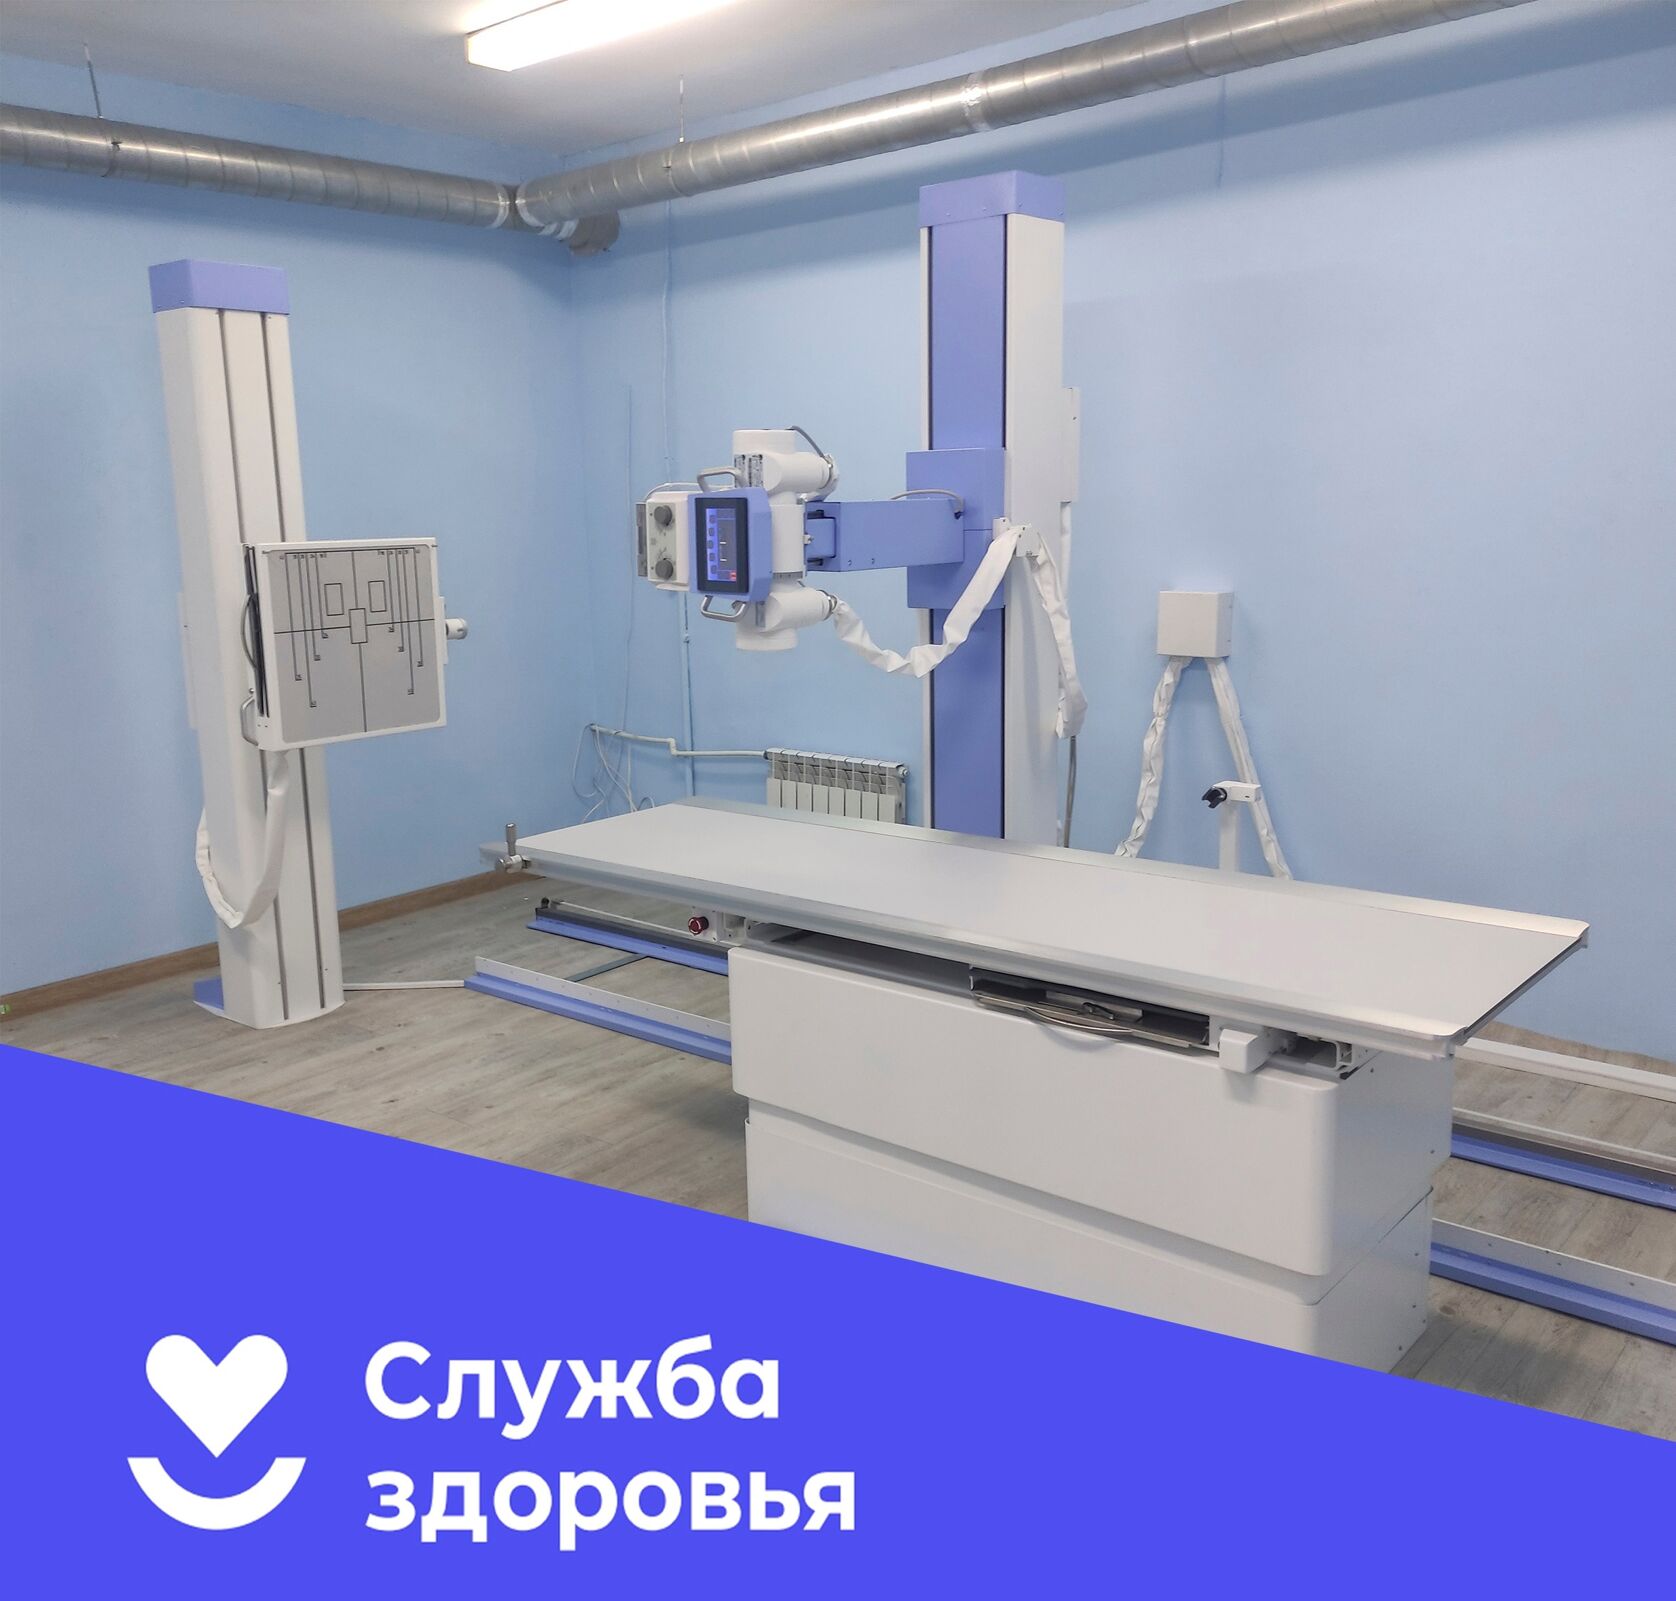 Высокоточная меддиагностика стала доступнее в Борисоглебском районе